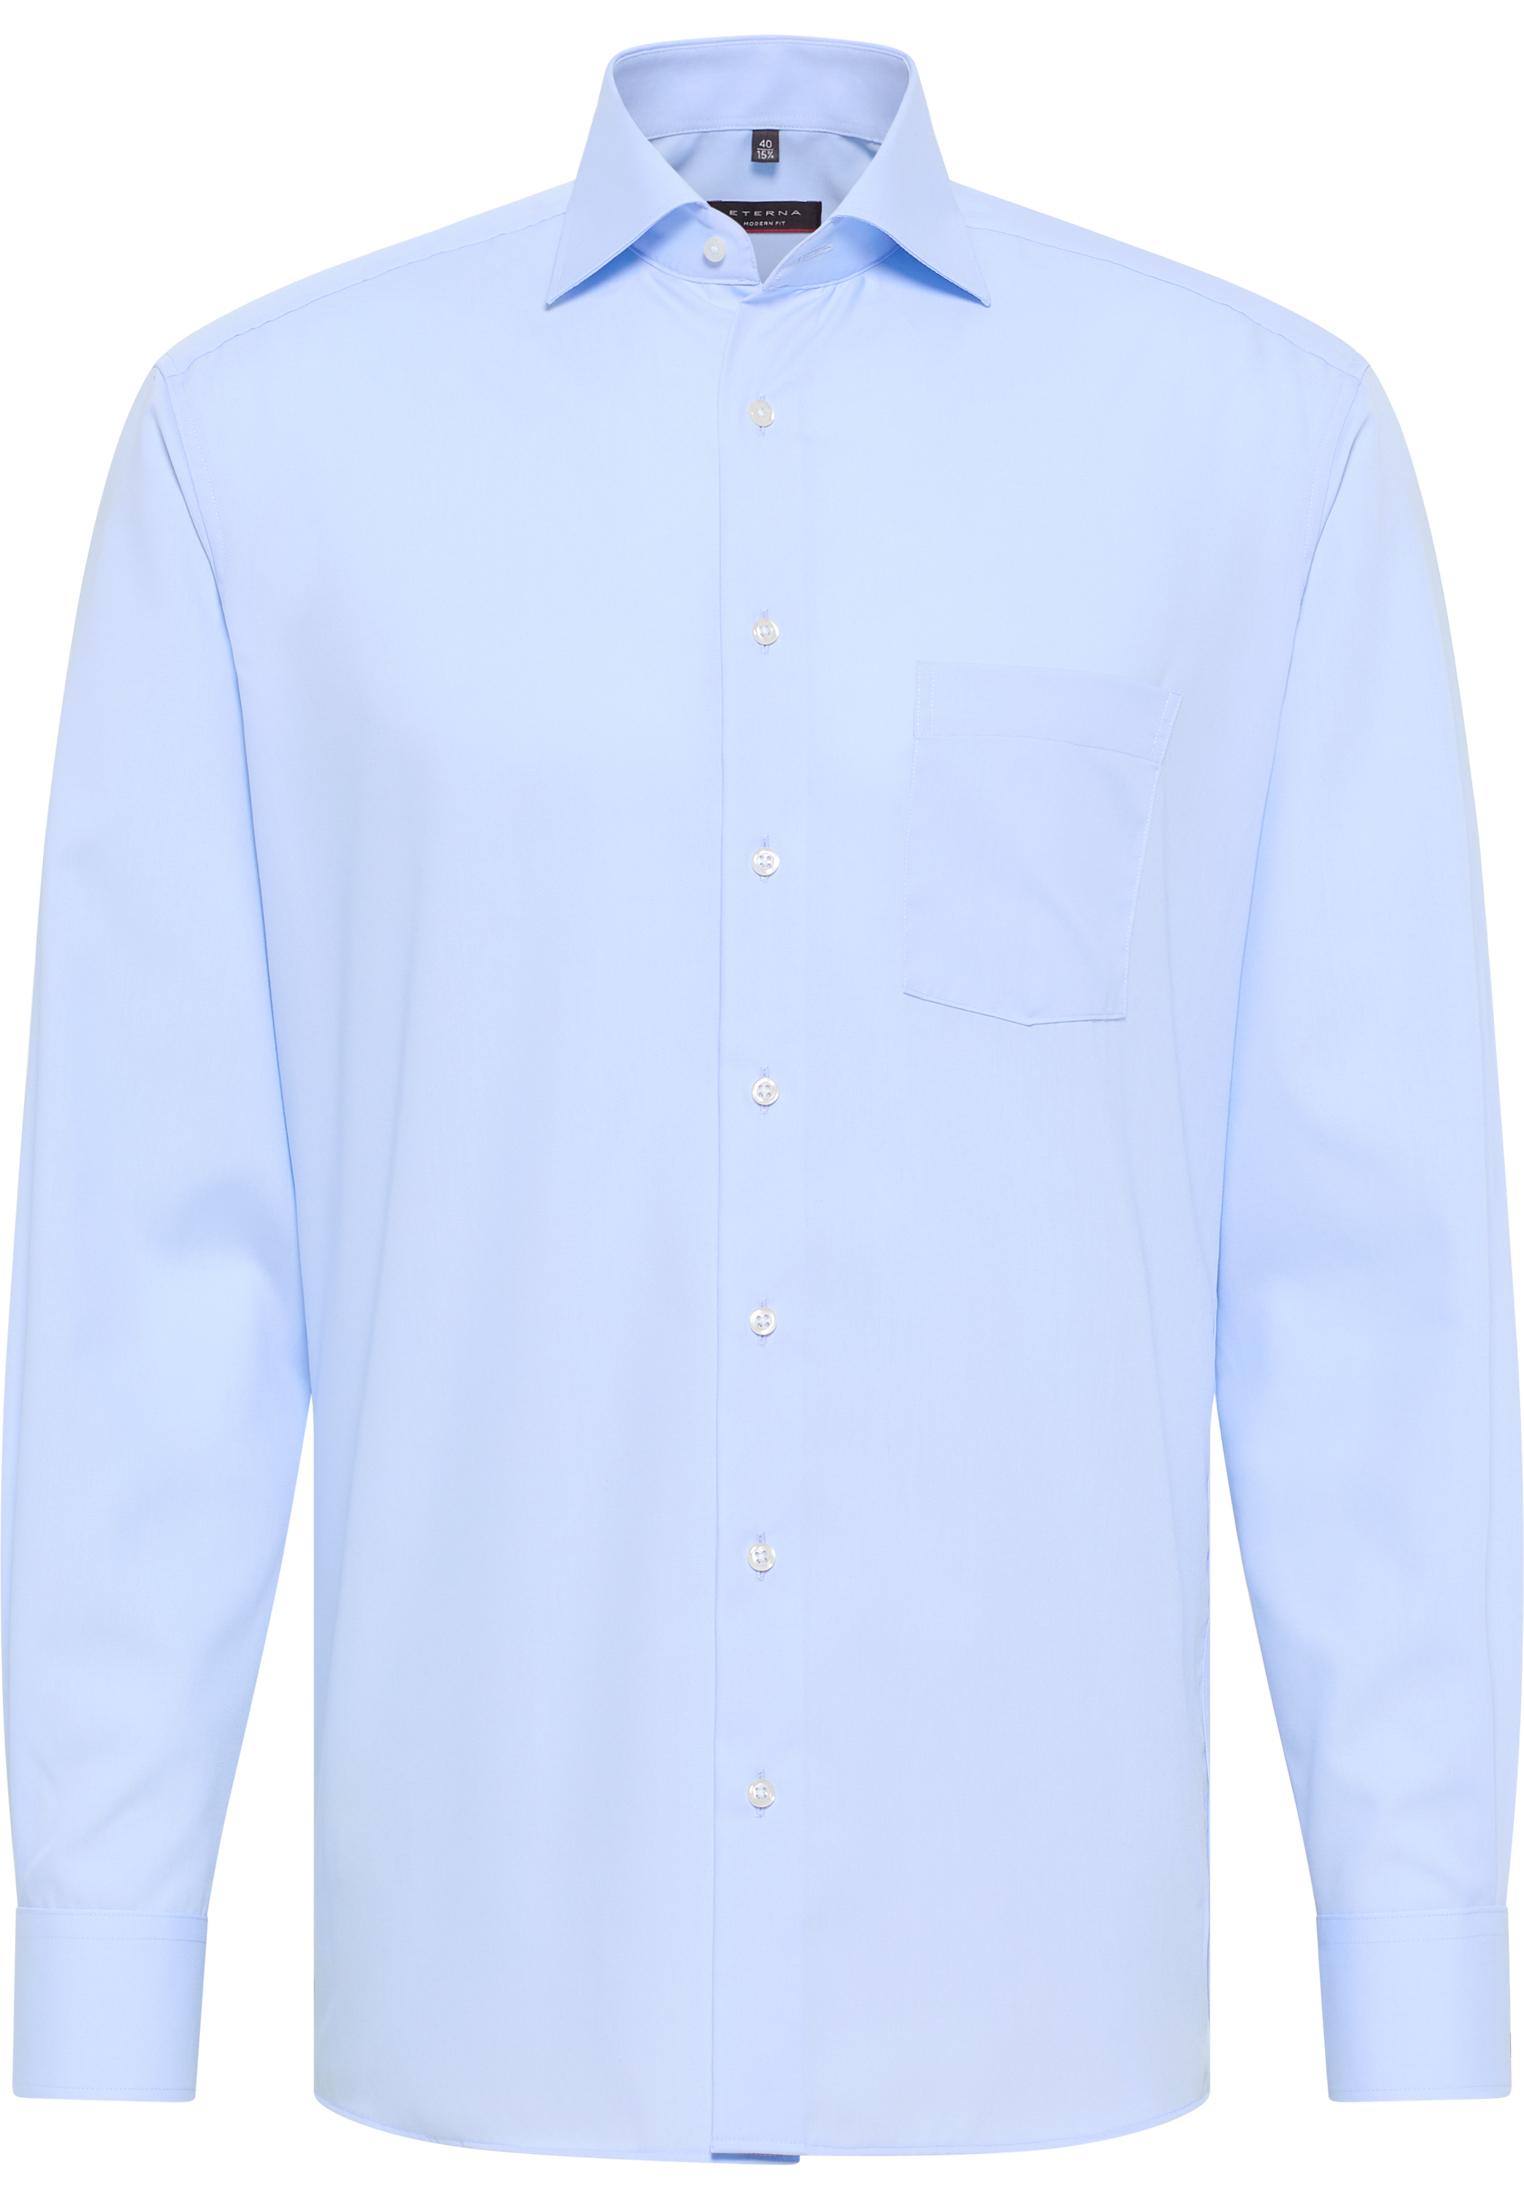 MODERN FIT Shirt in light blue plain